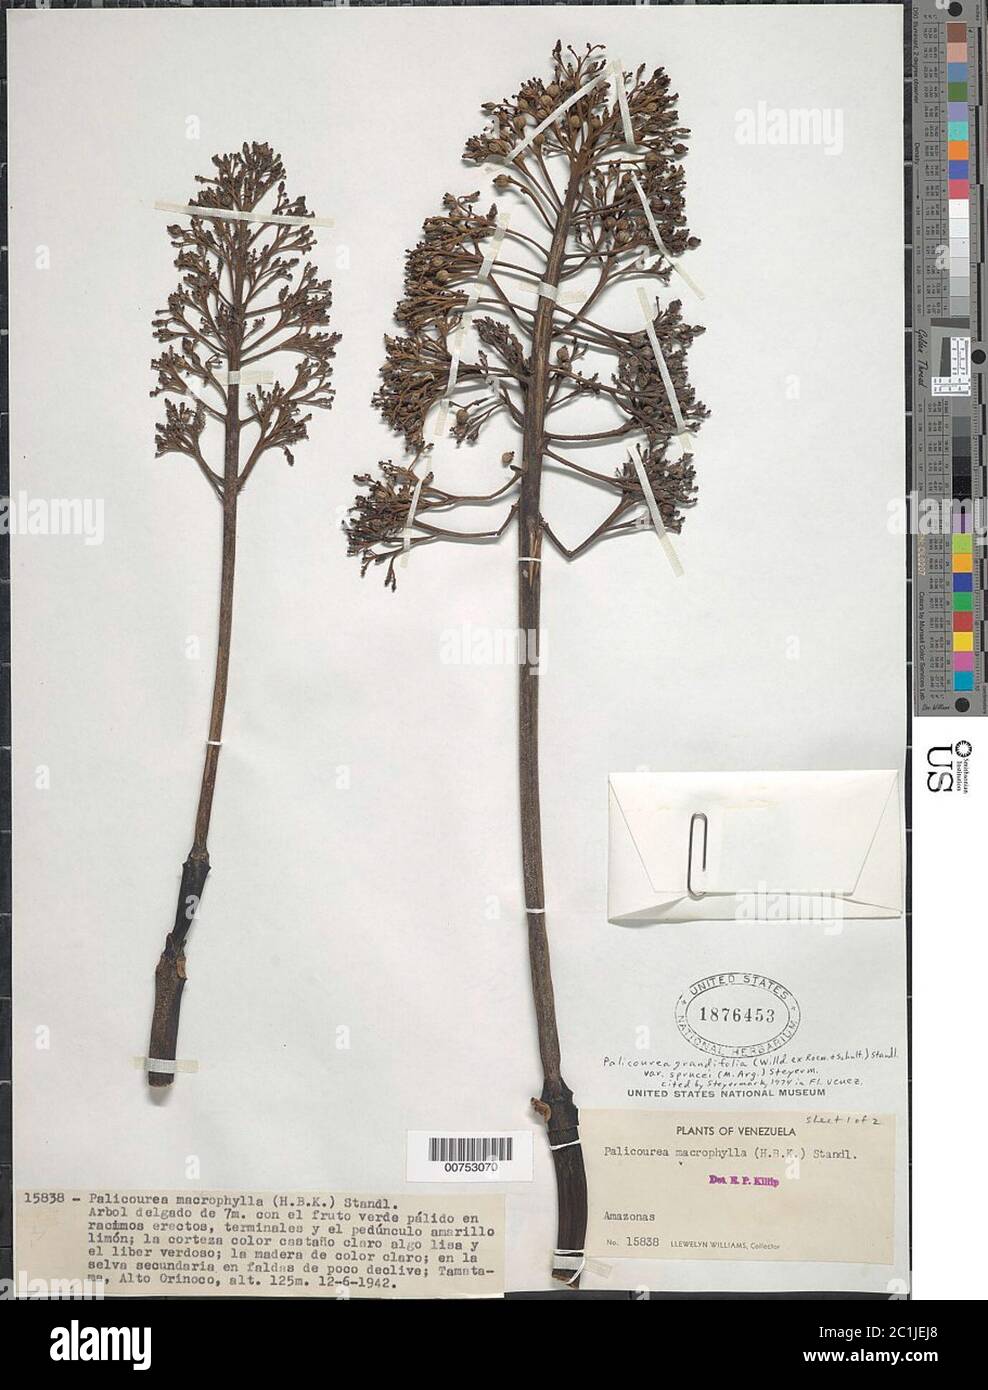 Palicourea grandifolia var sprucei Palicourea grandifolia var sprucei. Stock Photo